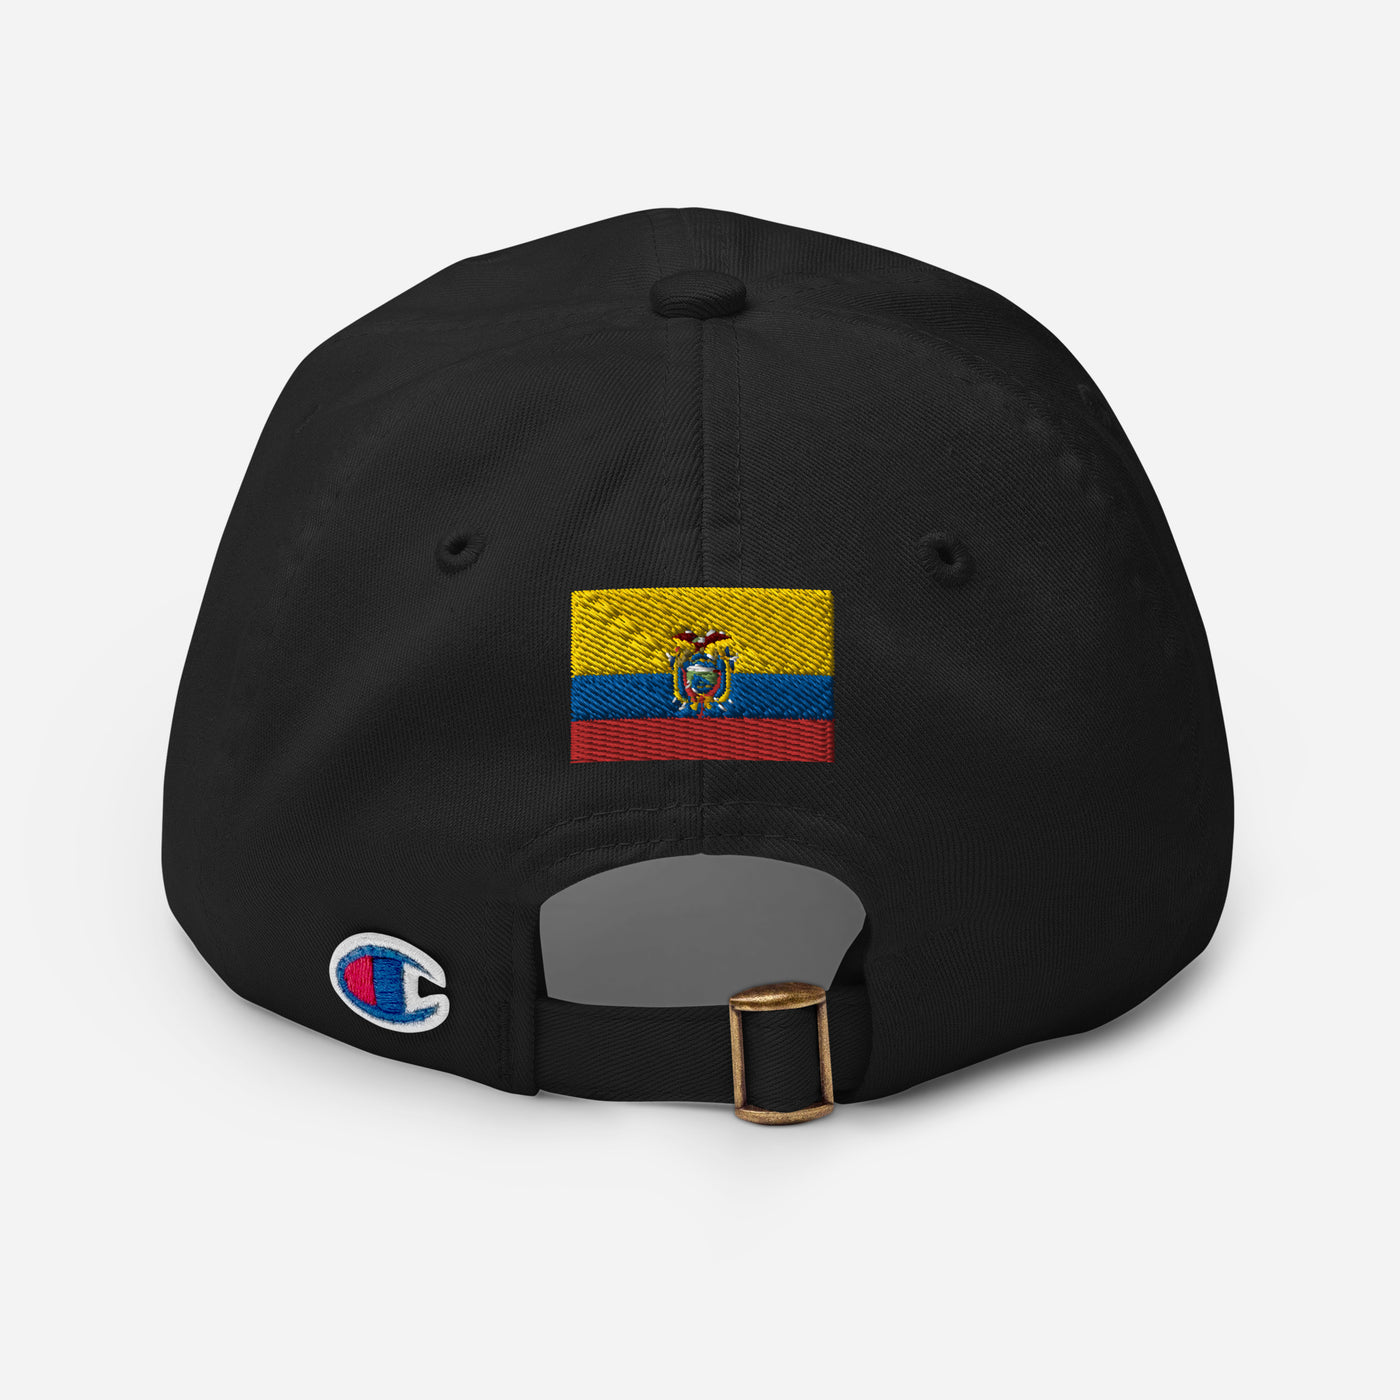 Ecuador POR VIDA Champion Dad Cap